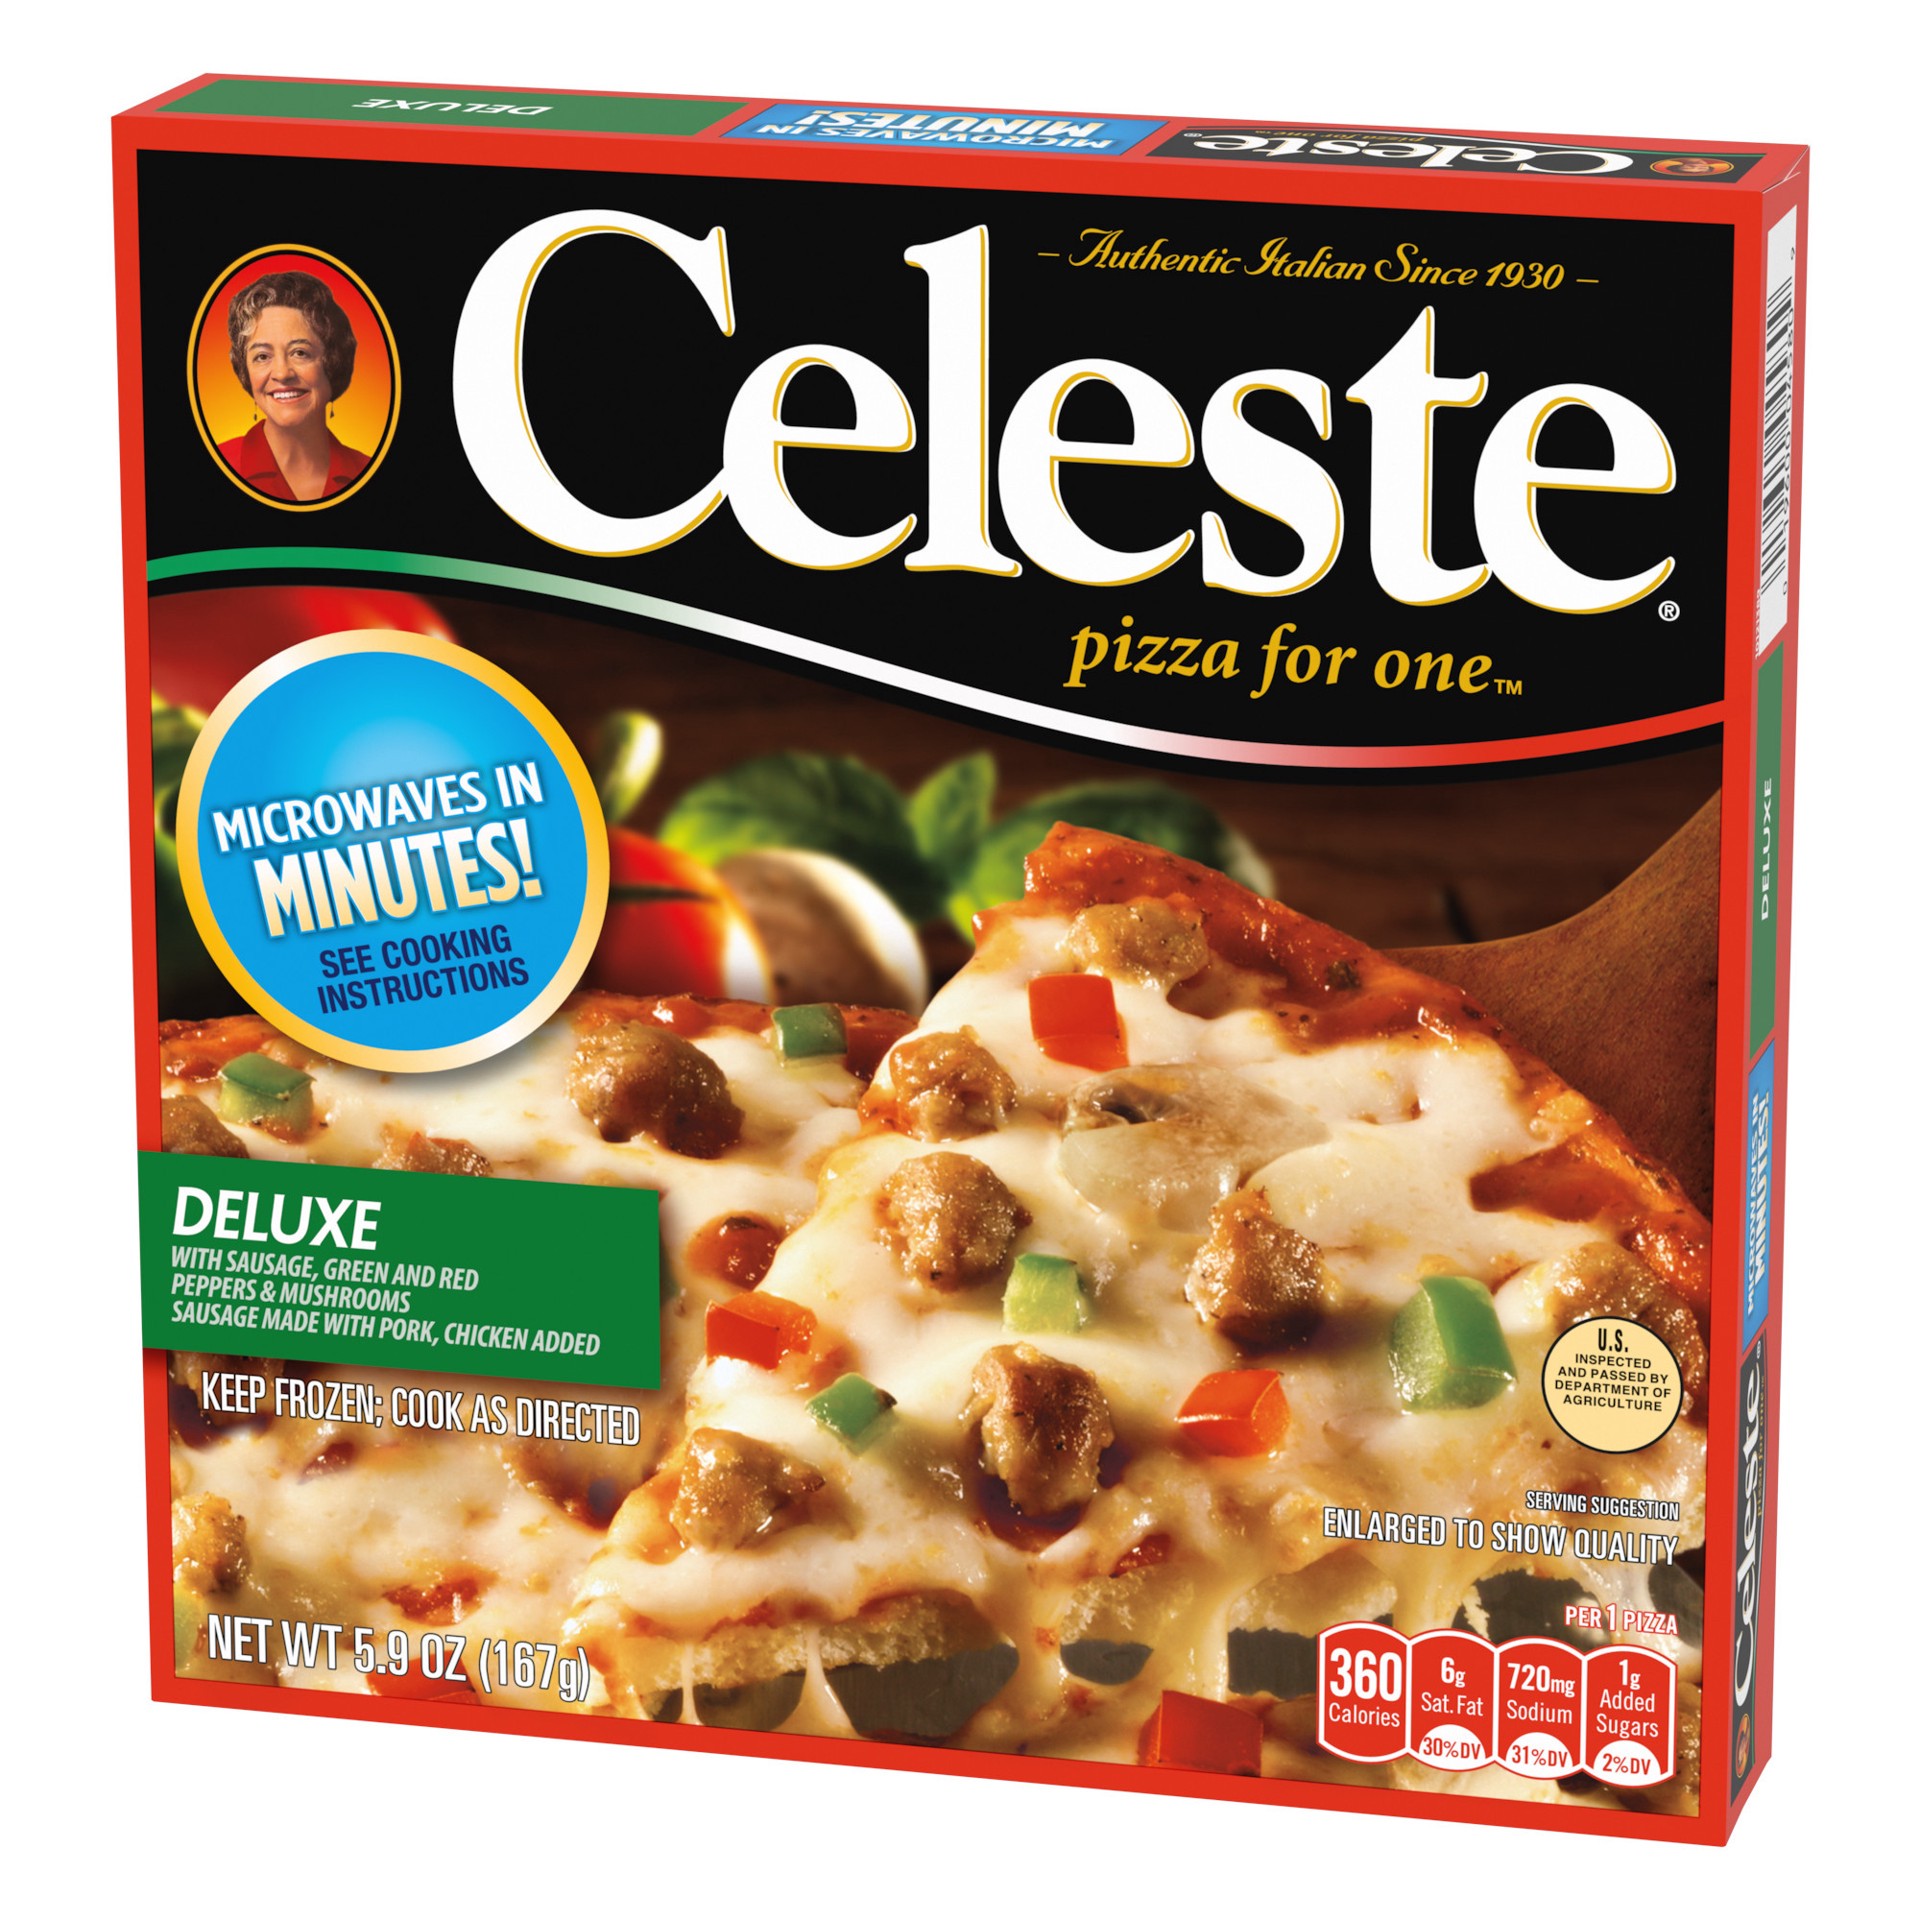 slide 5 of 5, Celeste Deluxe Pizza 5.9 oz, 5.9 oz